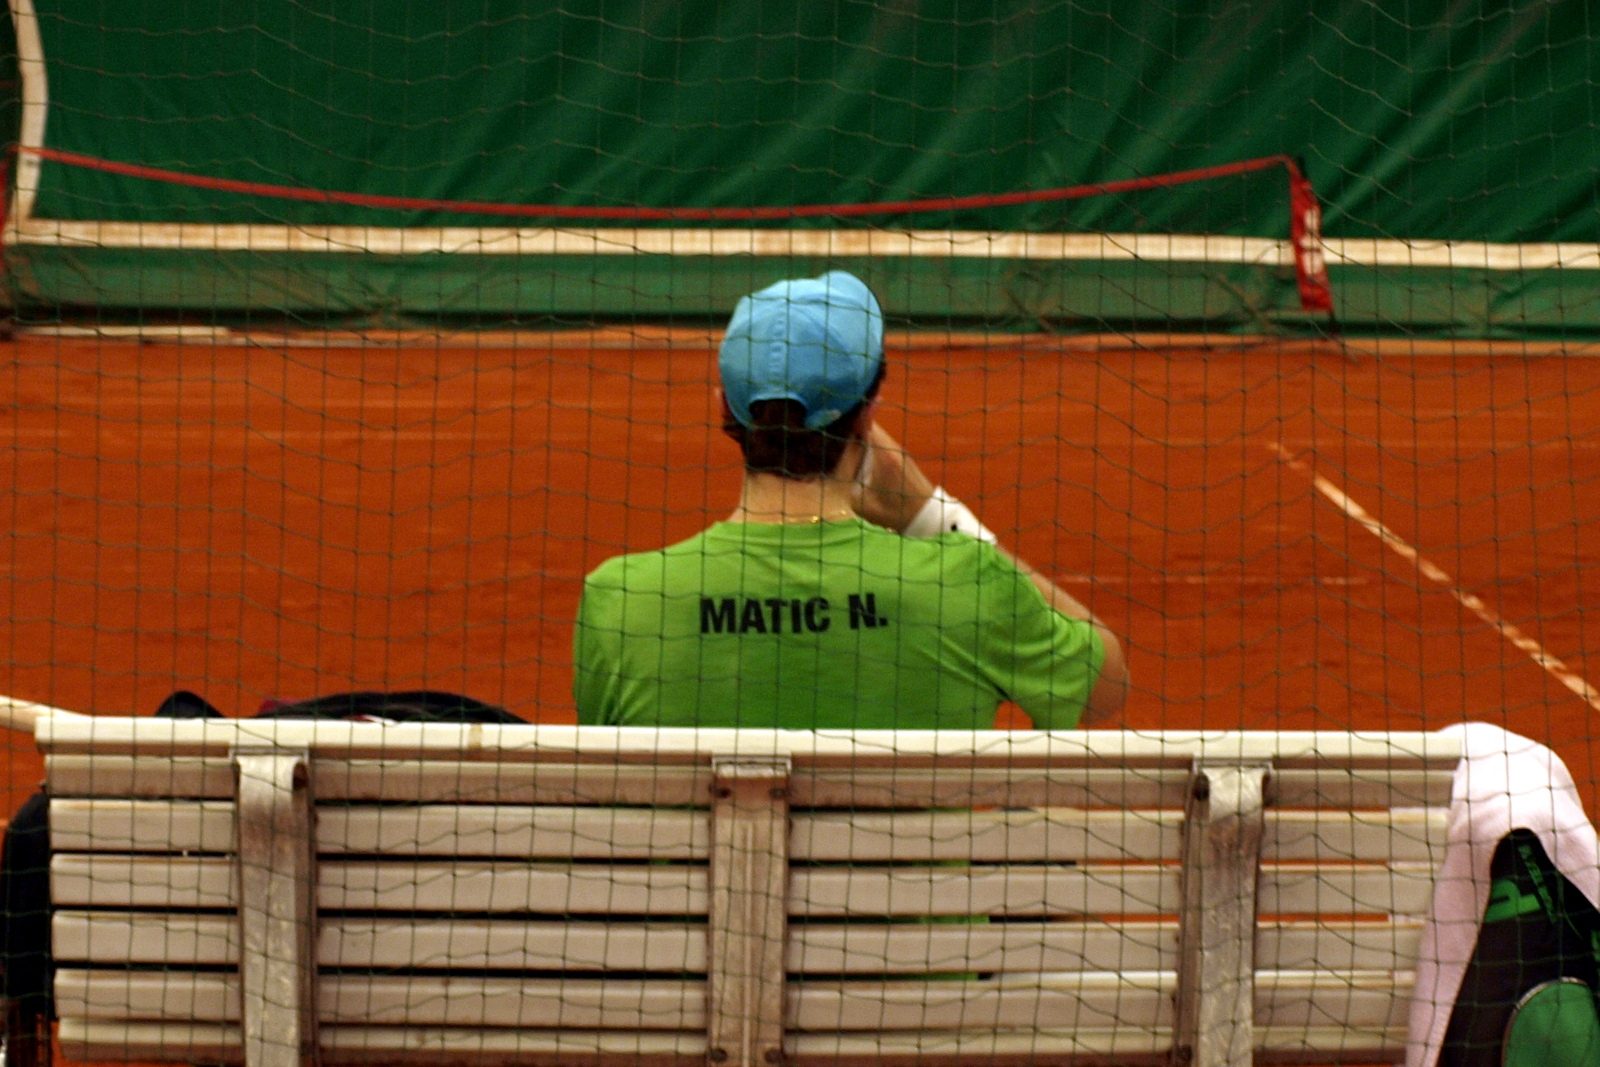 Tennis-Herren verlieren nach starkem Spiel gegen Vahr Hamburger Polo Club